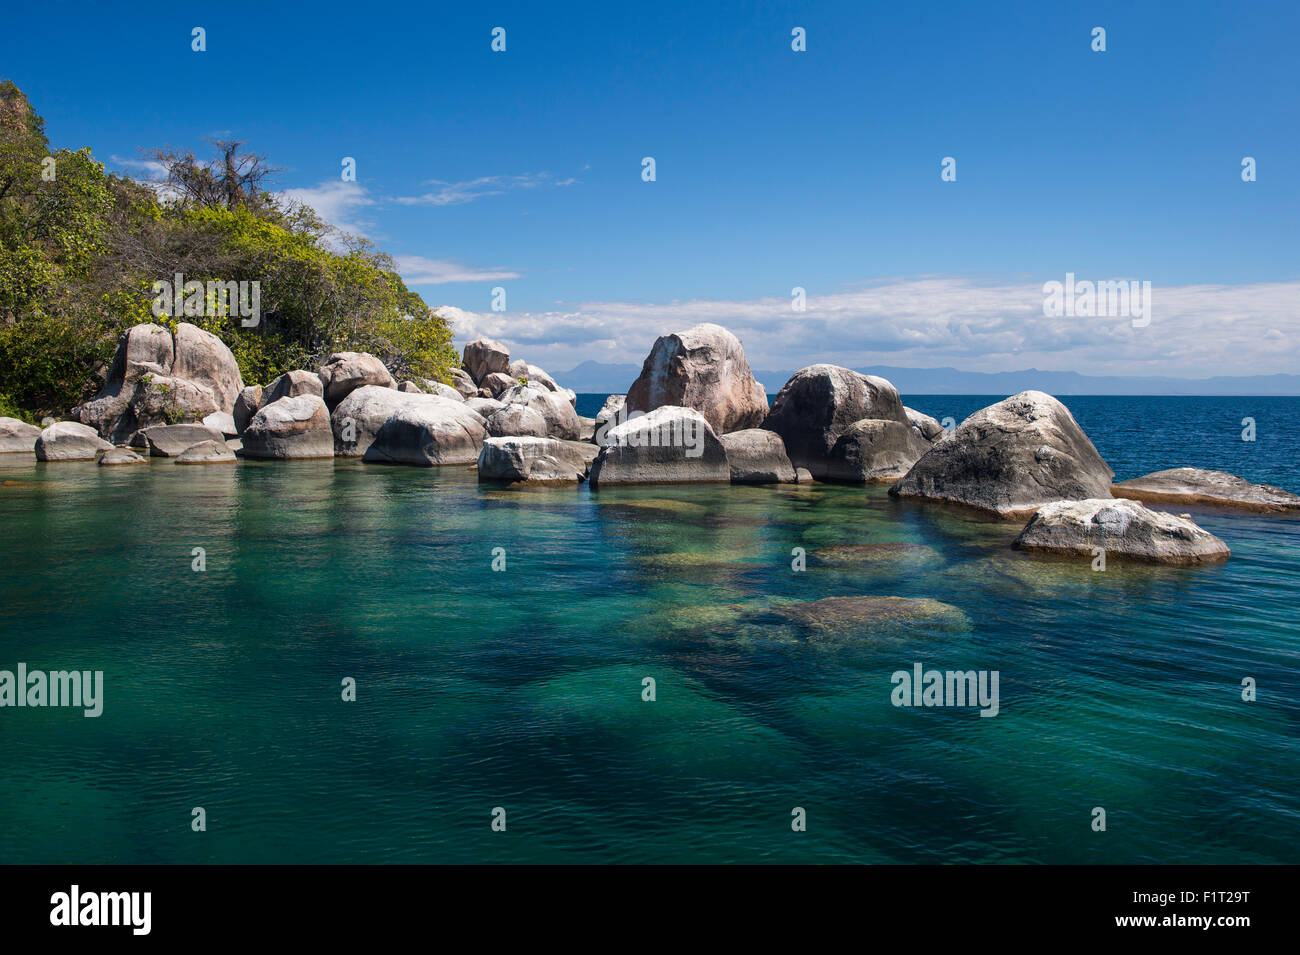 L'eau claire et turquoise, les roches de granit Mumbo Island, Cape Maclear, le lac Malawi, Malawi, Afrique Banque D'Images